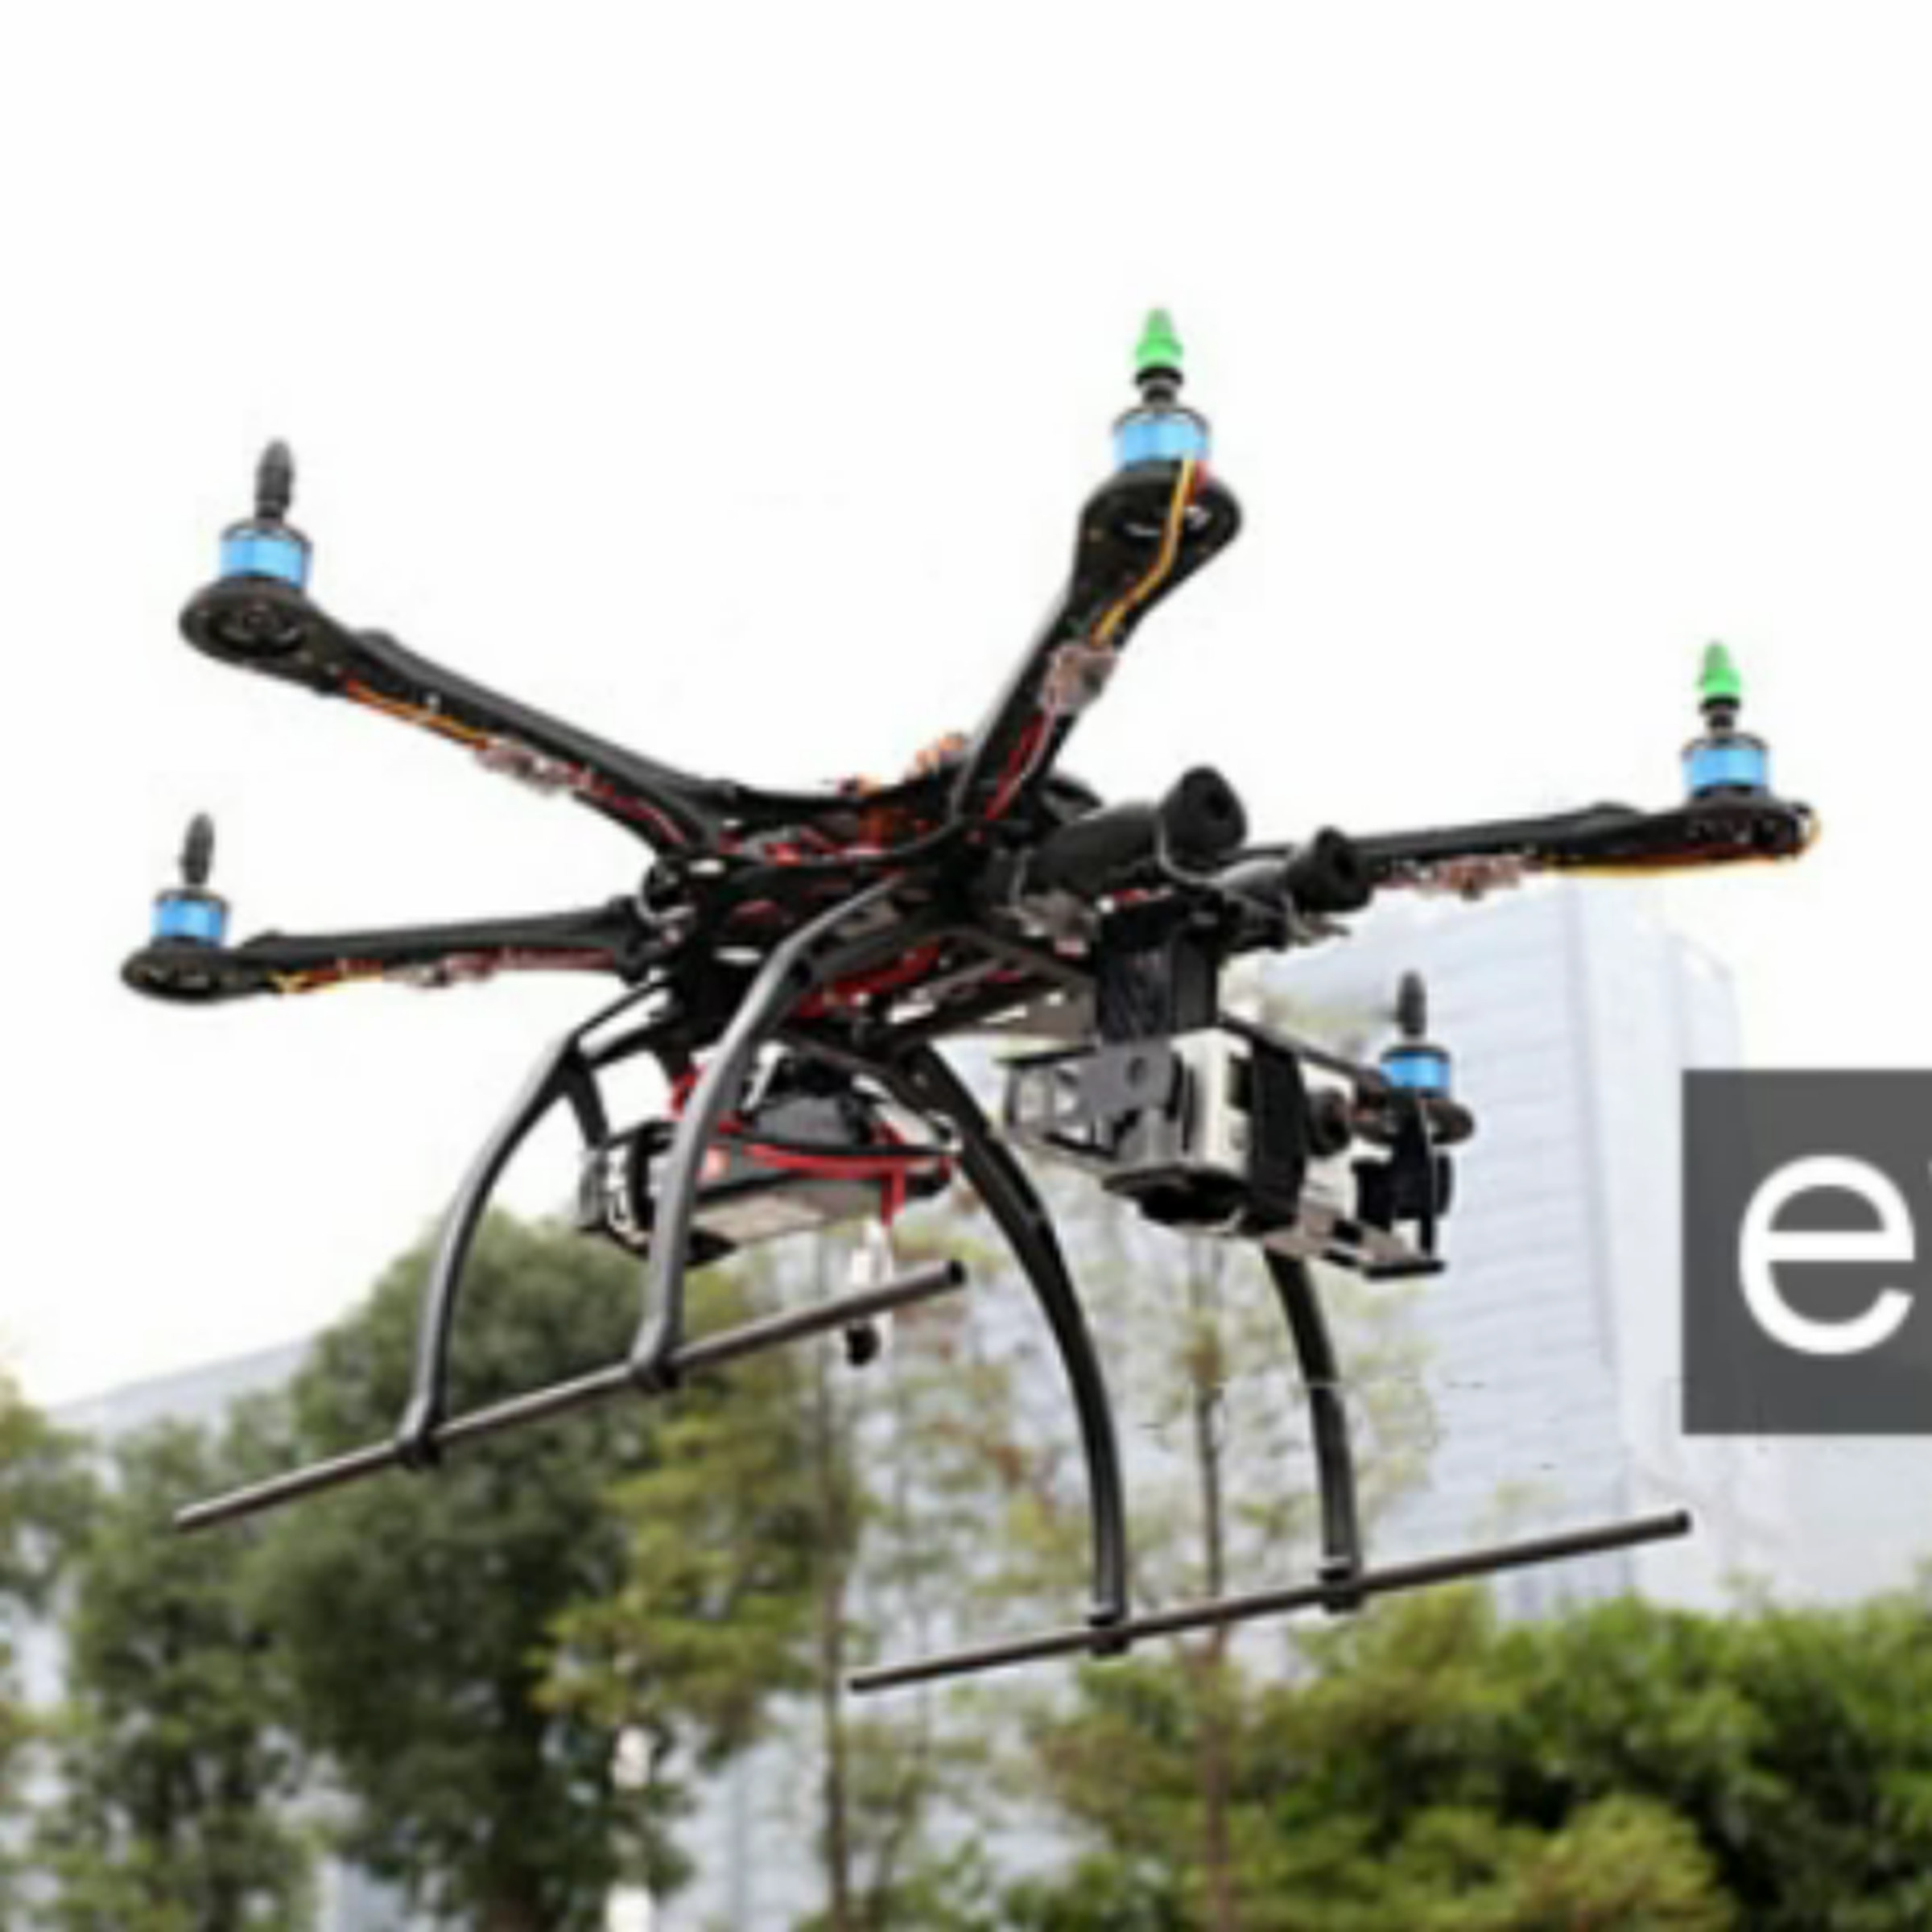 Eye3 Kickstarter flying camera platform